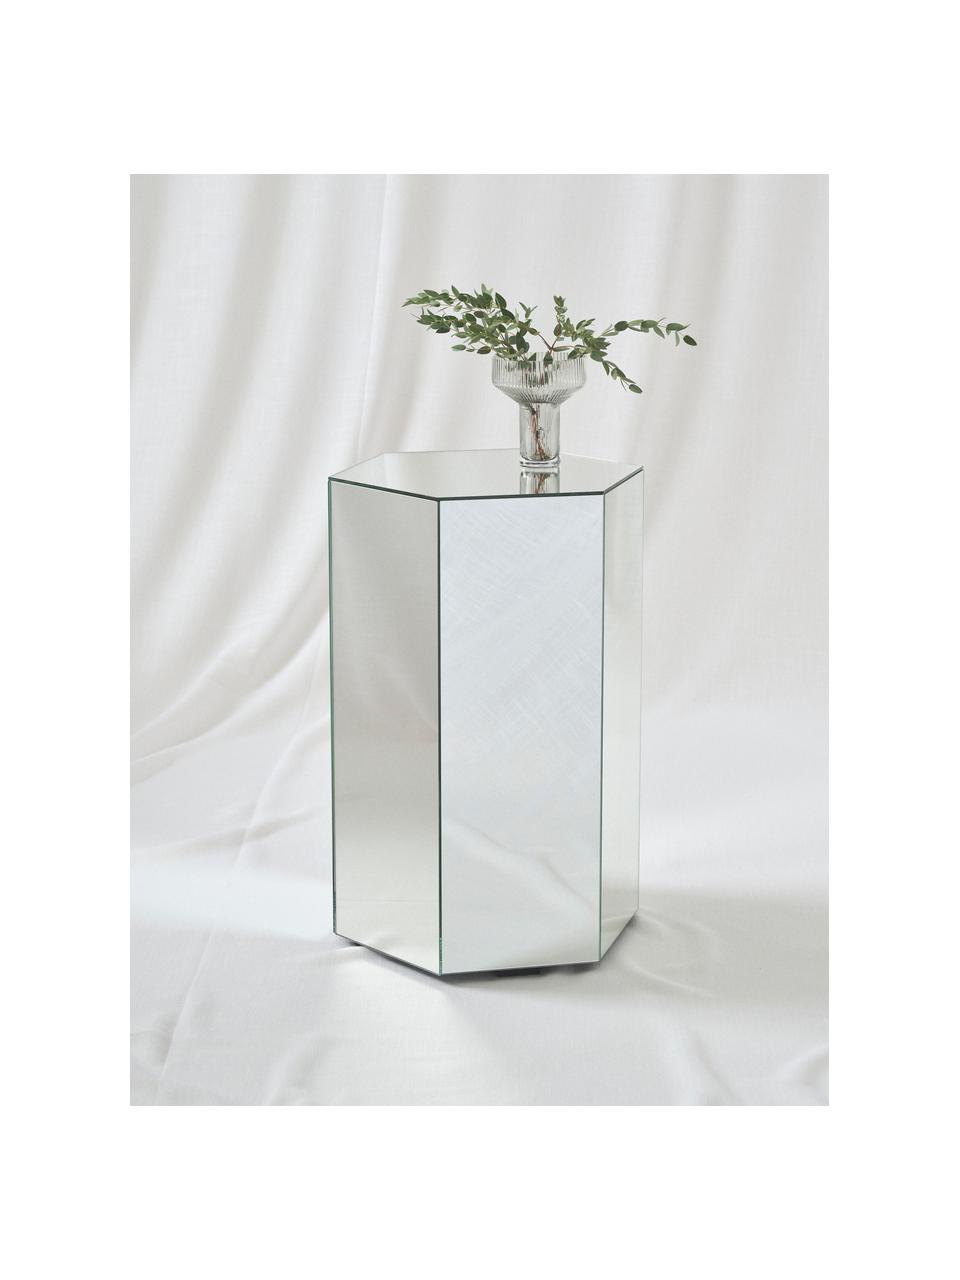 Glazen bijzettafel Schrapen met spiegeleffect, Vezelplaat met gemiddelde dichtheid (MDF), spiegelglas, Spiegelglas, B 40 cm x H 60 cm